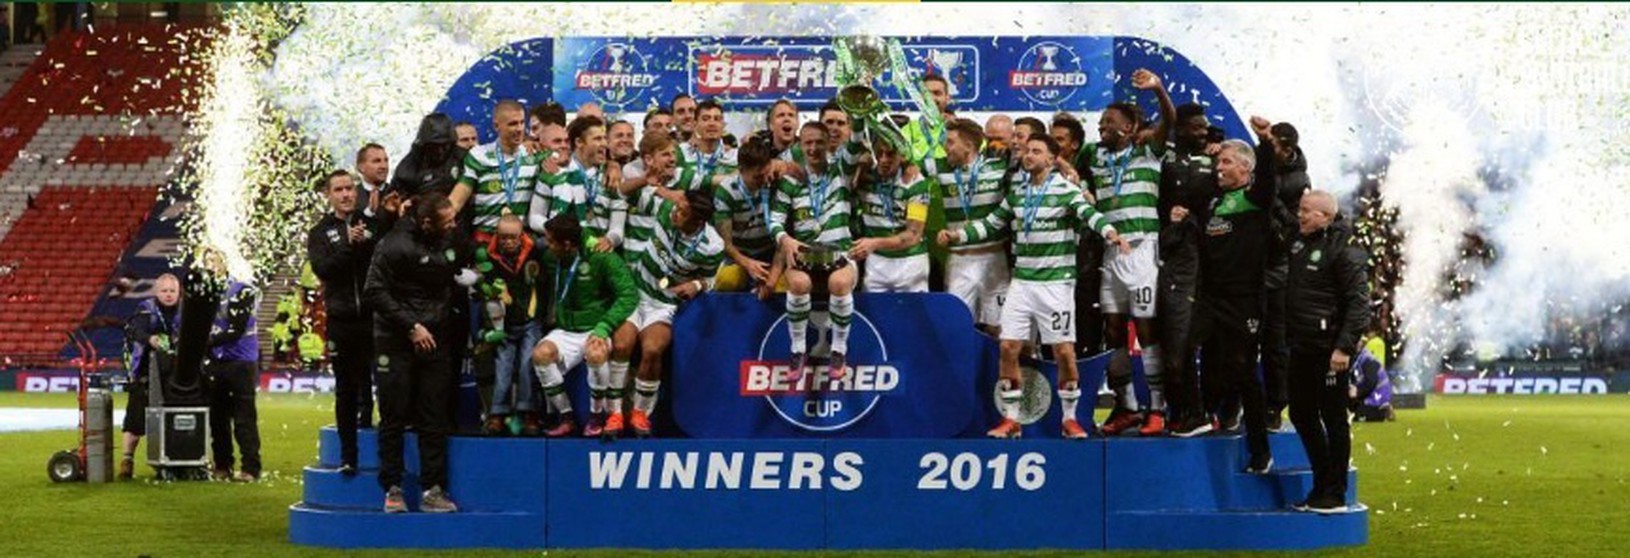 Futbalisti Celticu Glasgow získali